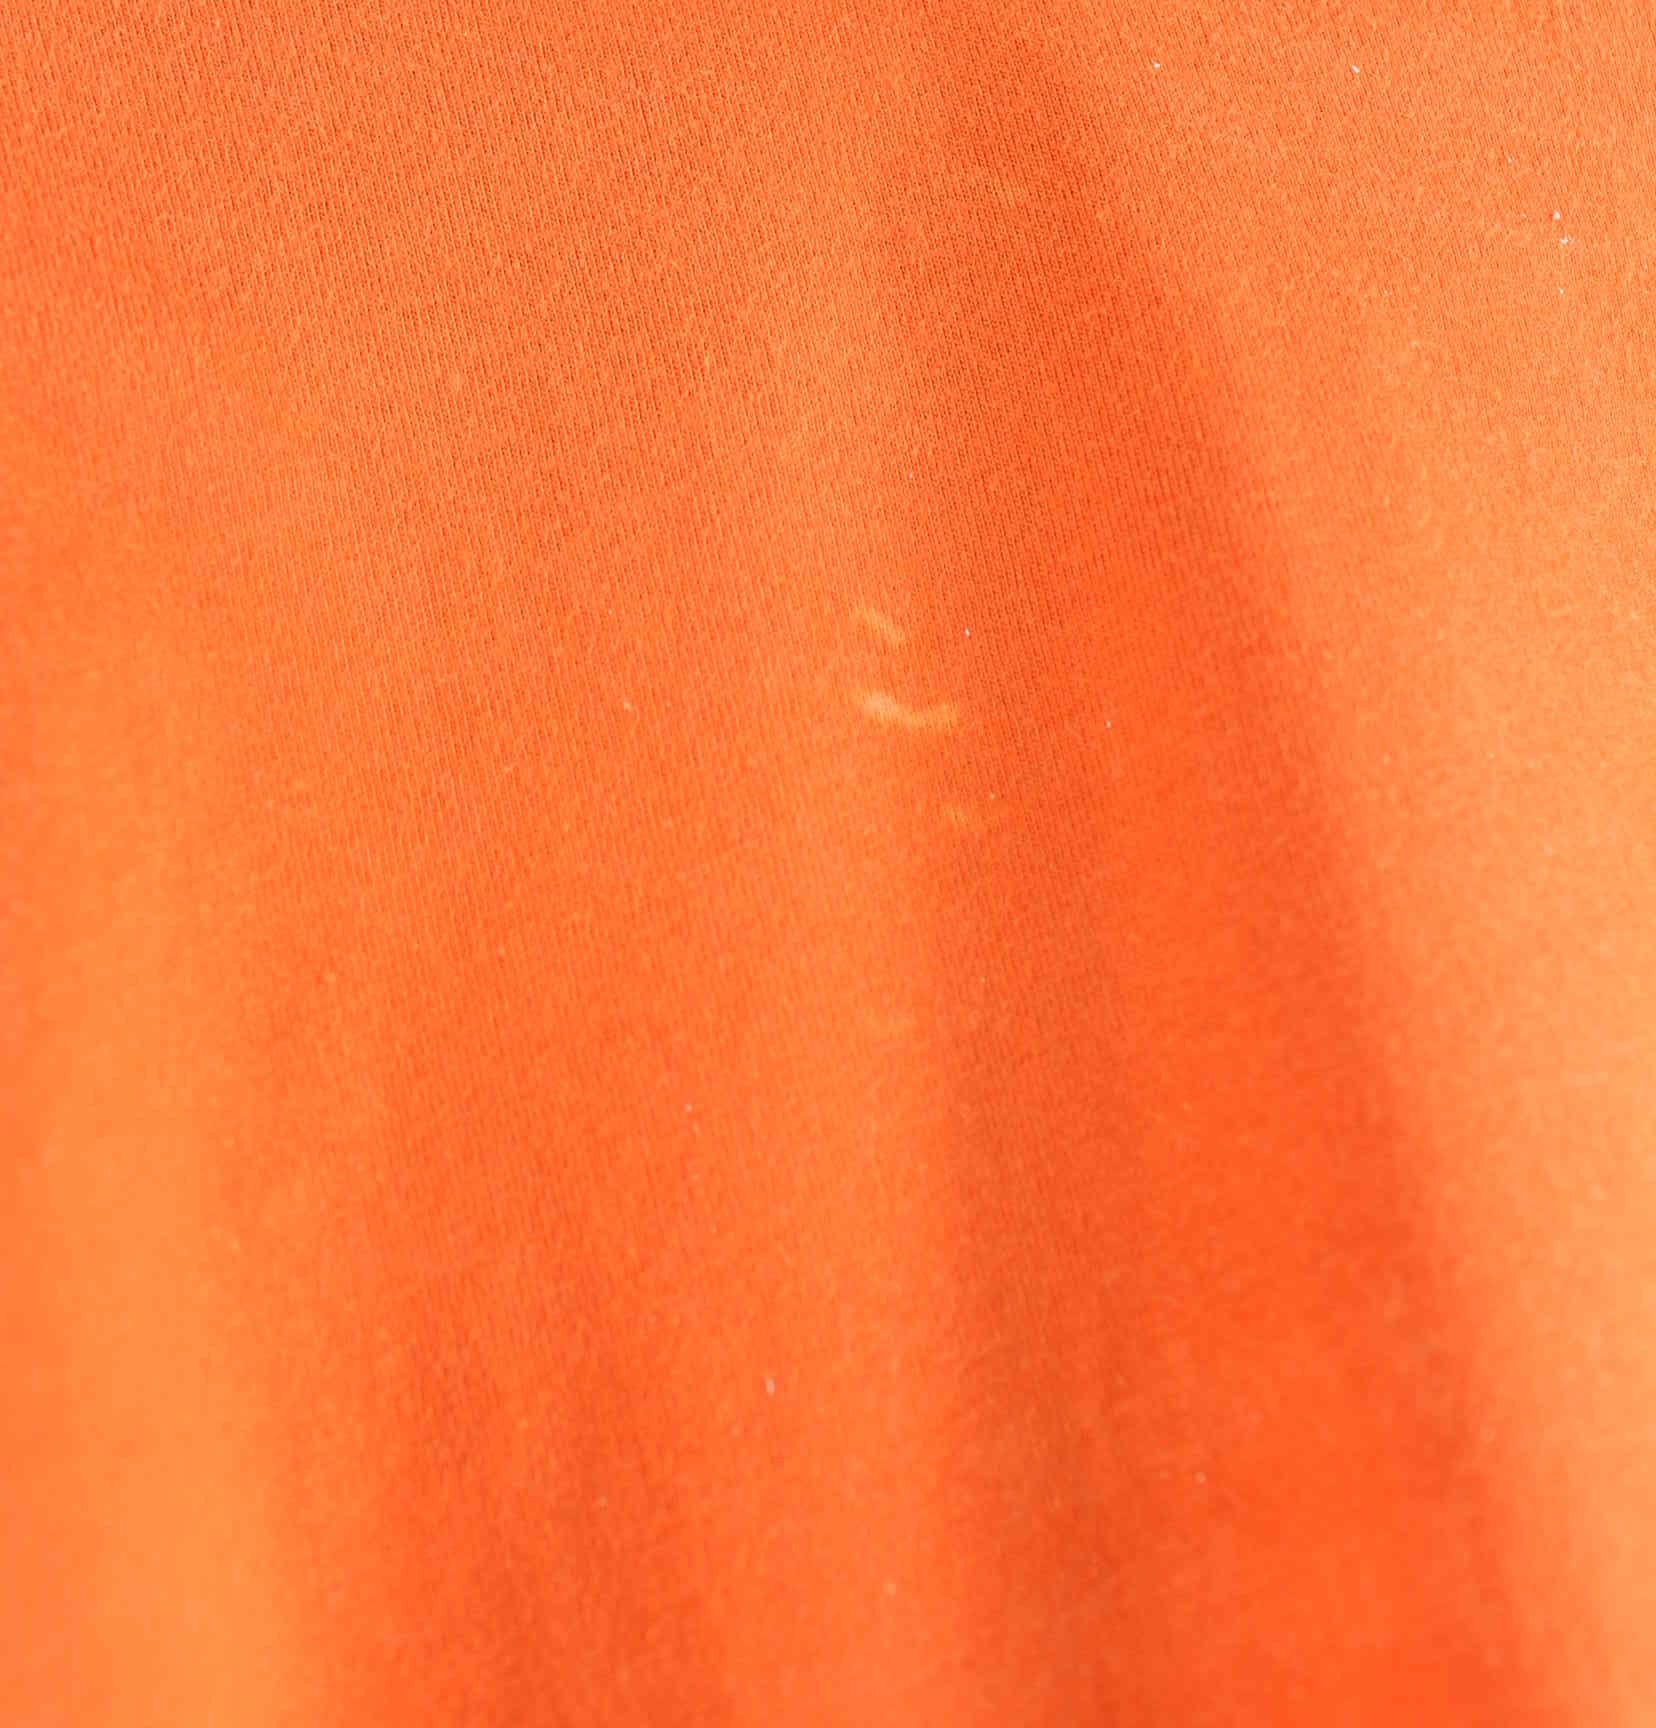 Reebok Basic T-Shirt Orange XXL (detail image 4)